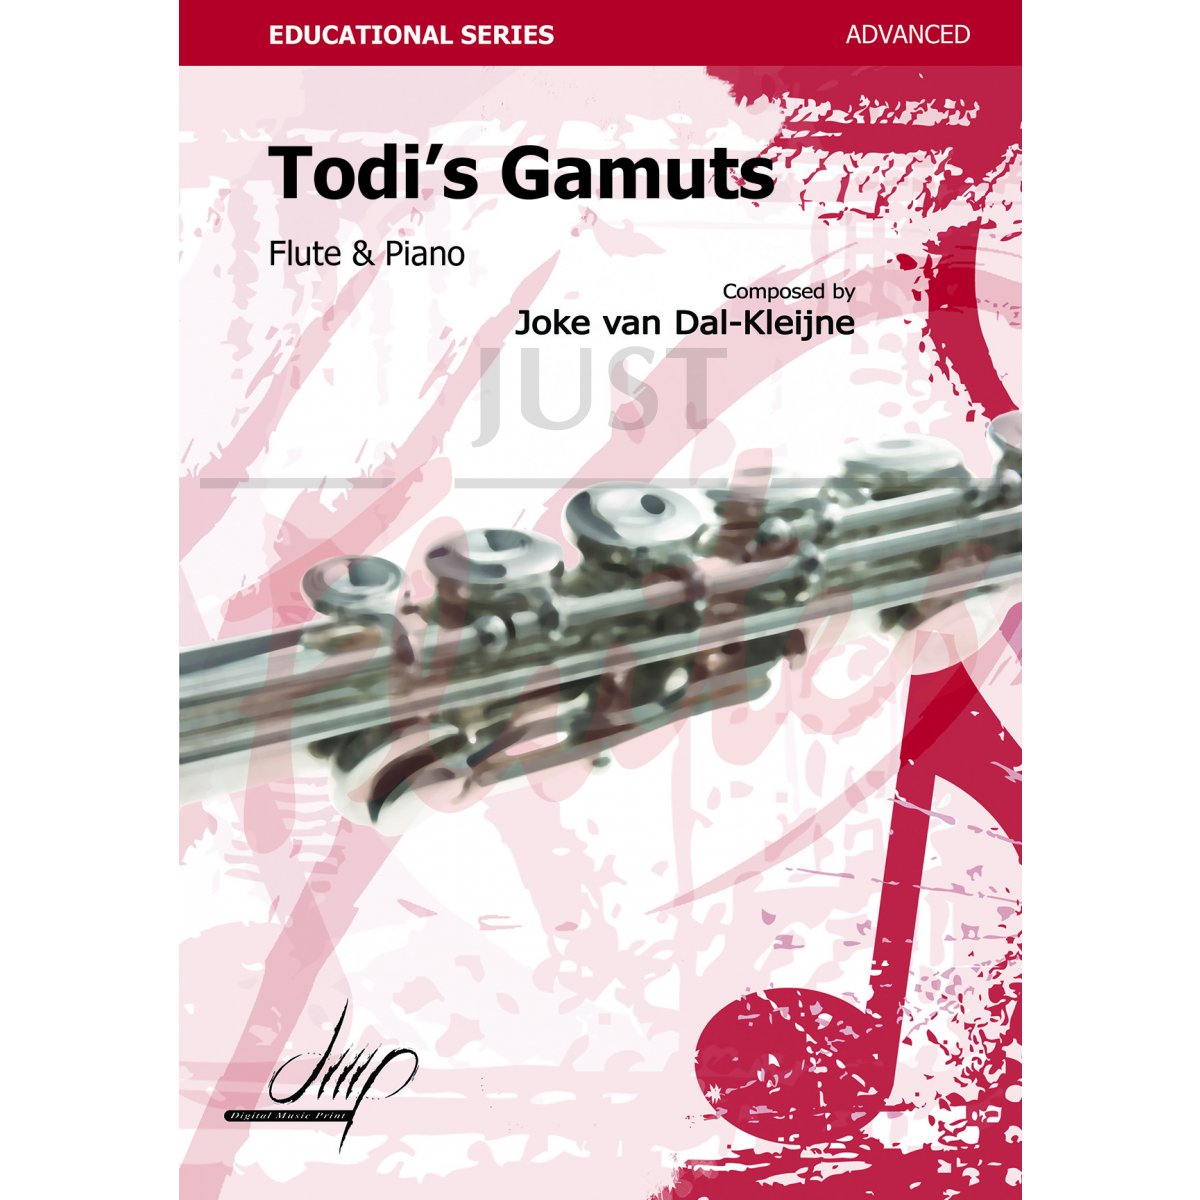 Todi's Gamuts